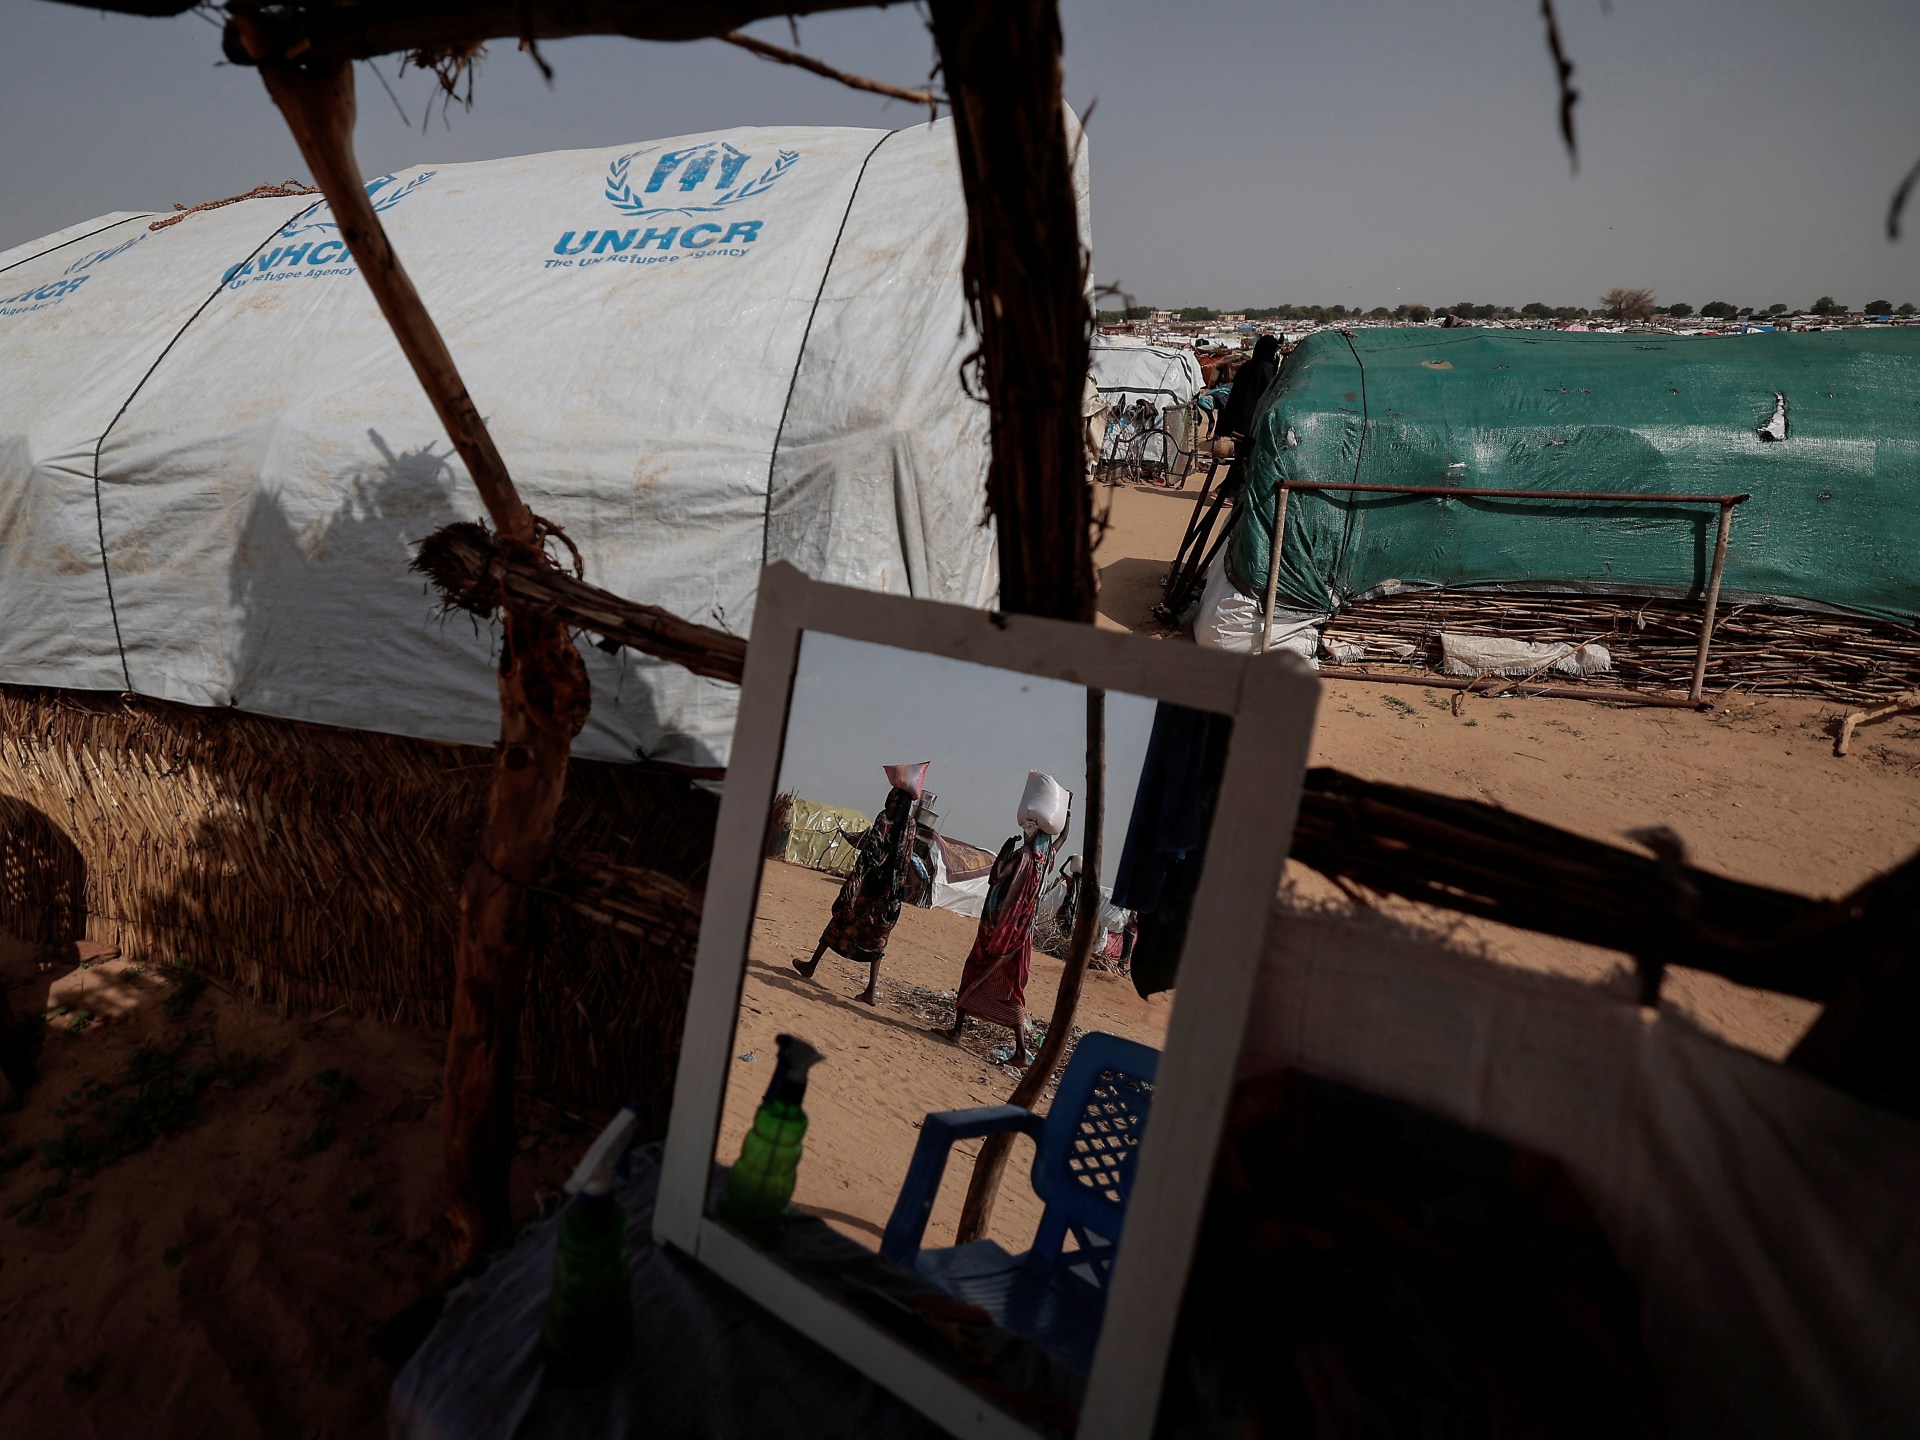 Warga sipil Sudan diyakini tewas dalam pertempuran Darfur |  Berita Konflik